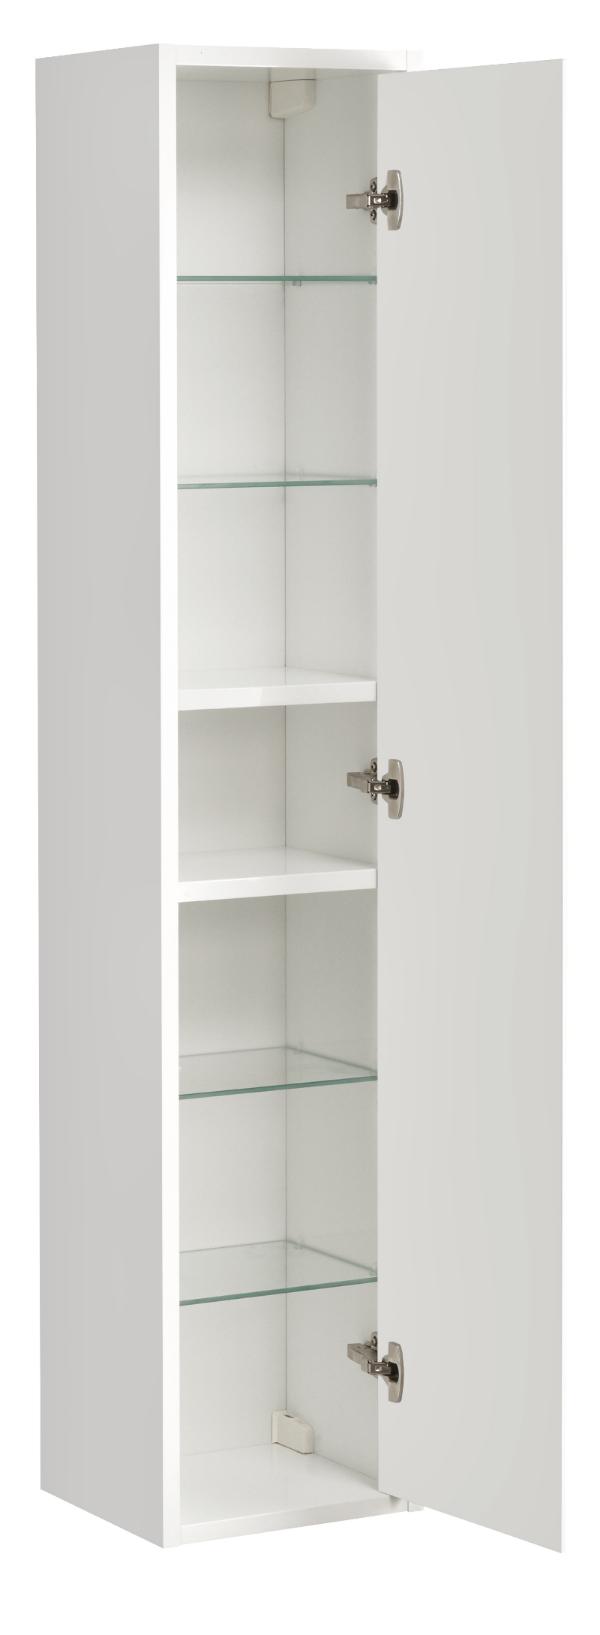 Шкаф пенал Акватон Римини 35 см, белый глянец 1A232703RN010 NEW